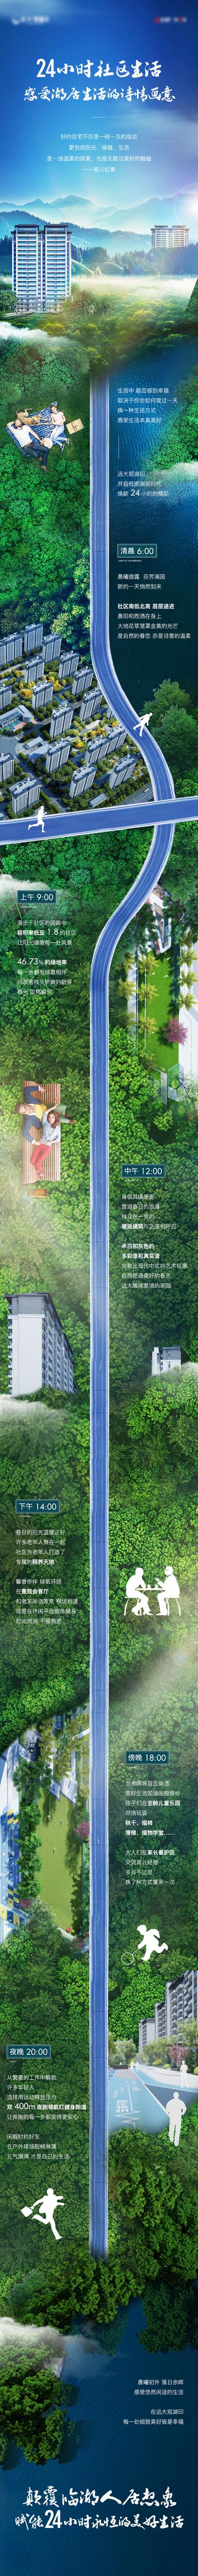 【南门网】海报 长图 地产 24小时 生活 融合 美好 大气 质感 创意